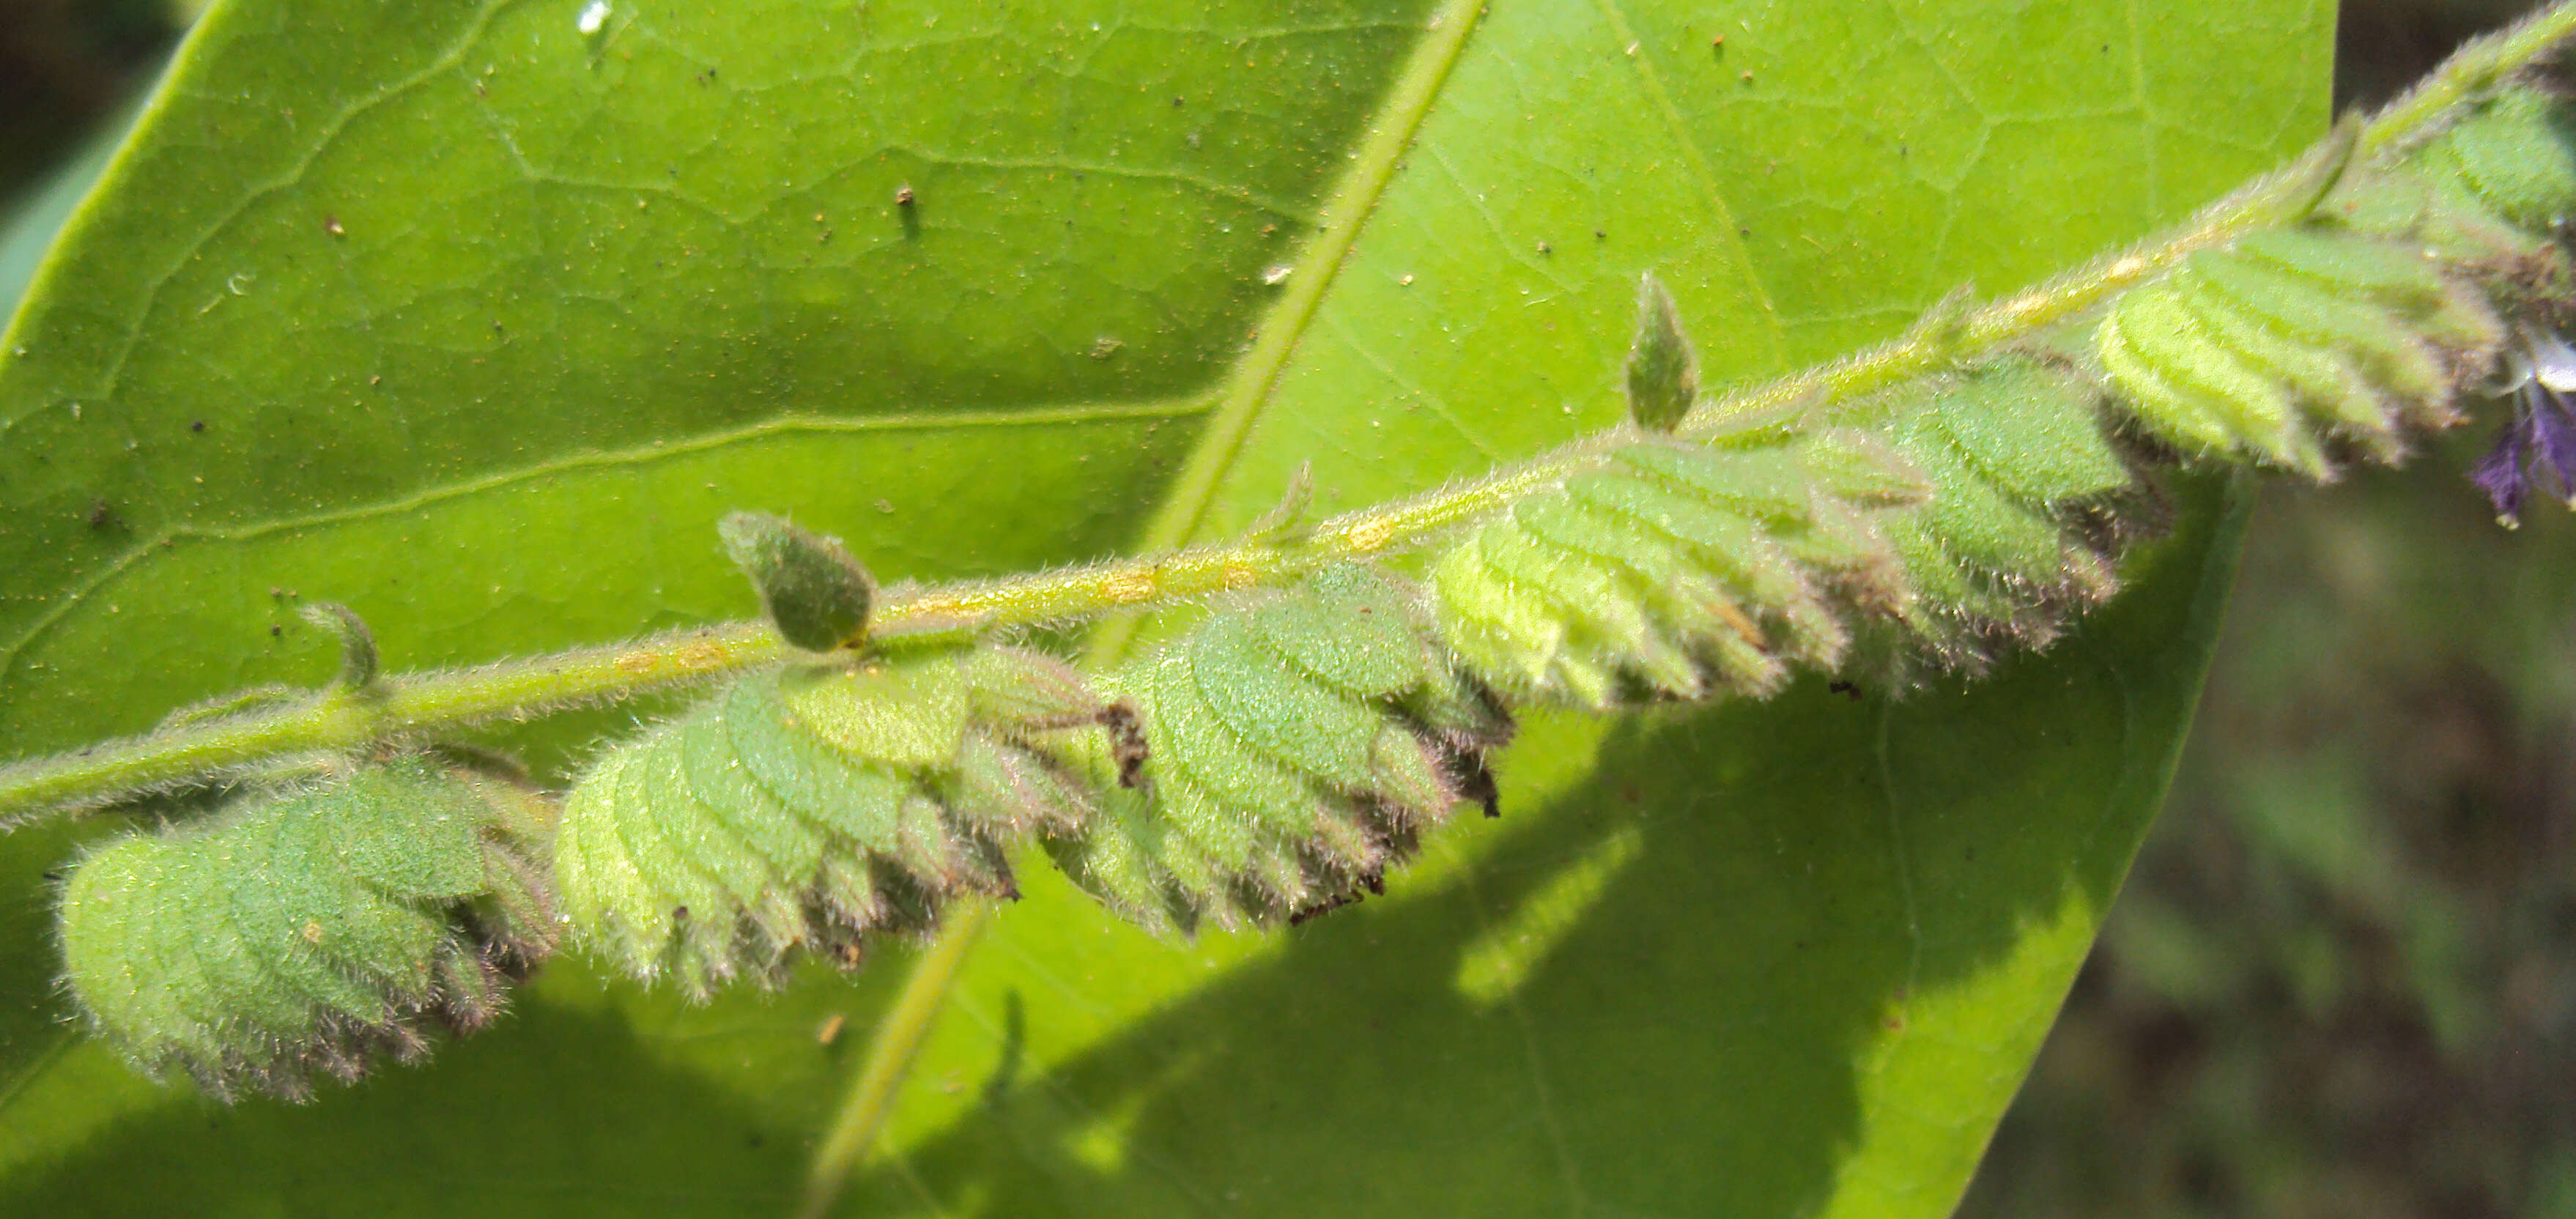 Image of Pogostemon purpurascens Dalzell